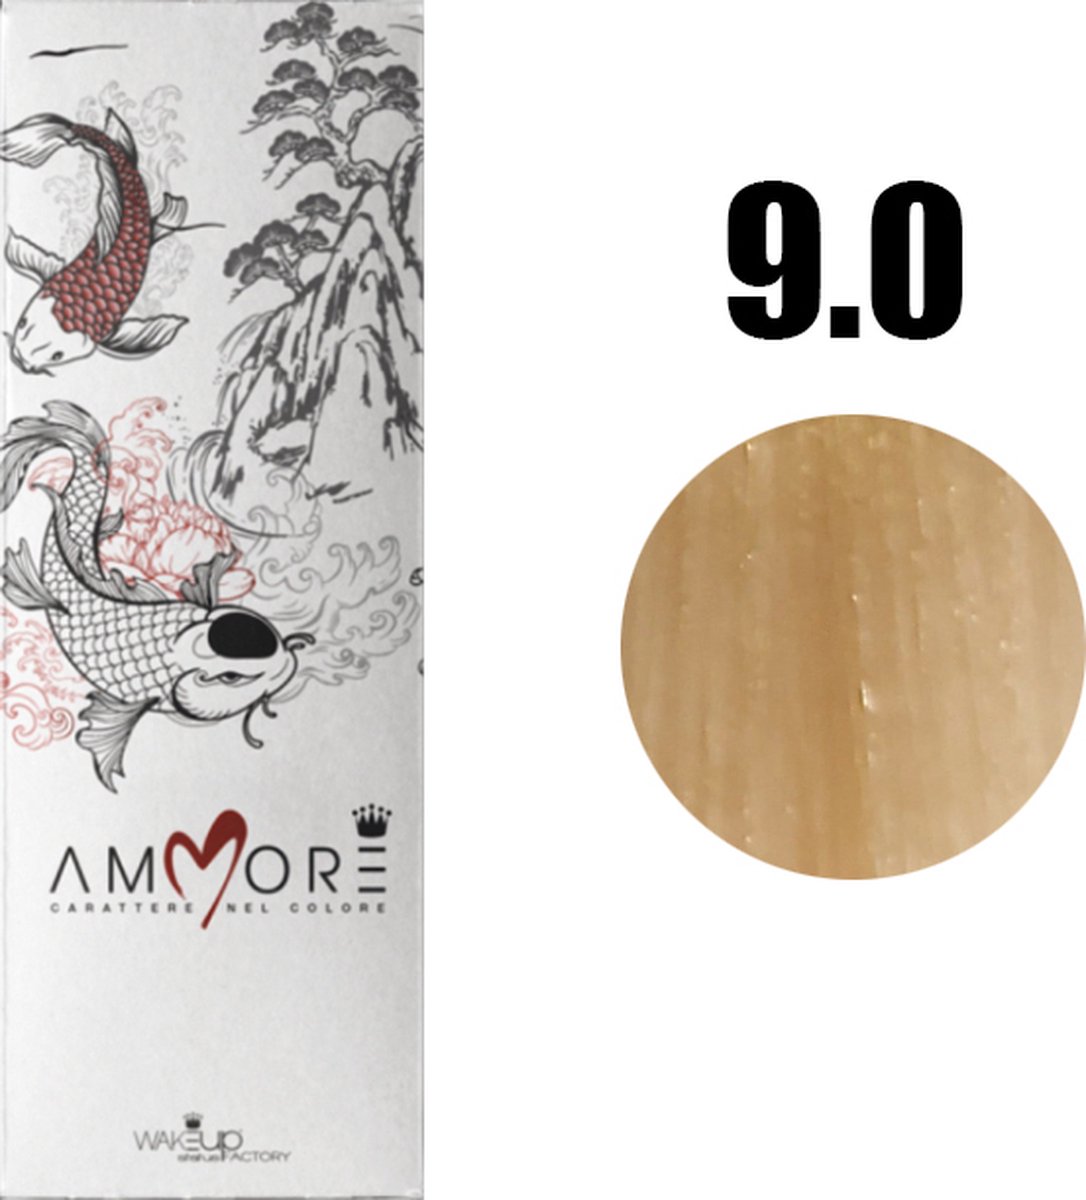 AMMORE 9.0 Zeer Lichtblond 200ml (2 X 100ml) - Haarverf organische formule van KALMS : Een mix van keratine, aloë vera, melk, honing en sericine